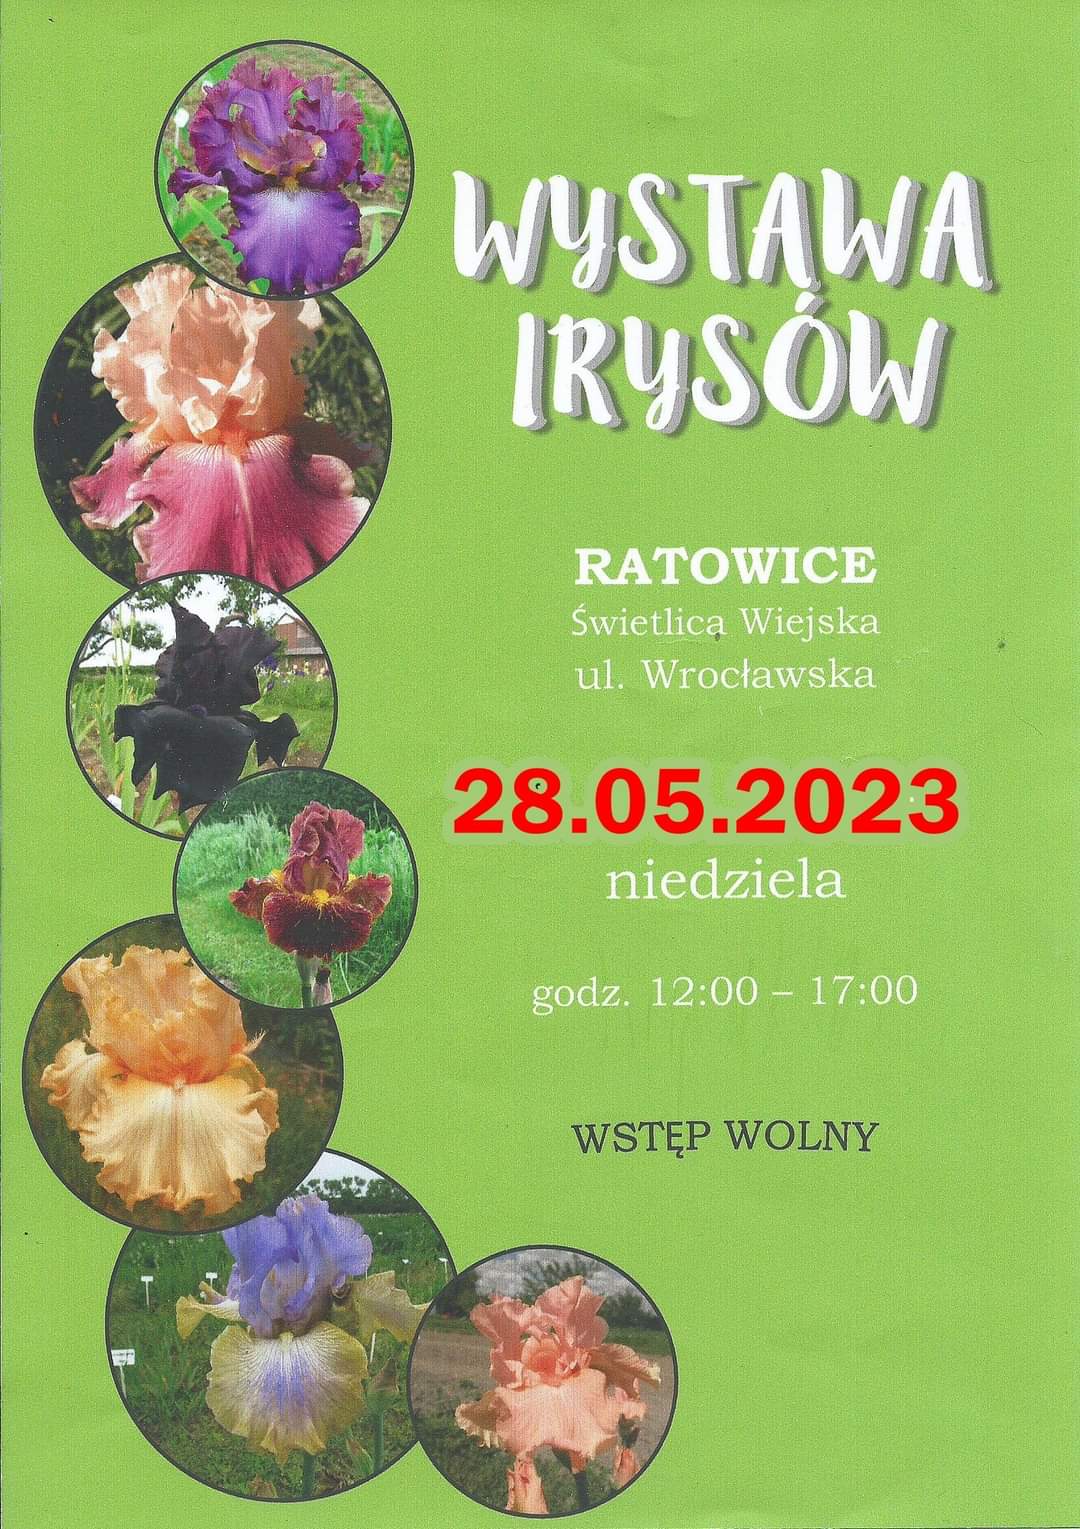 Wystawa Irysów w Ratowicach